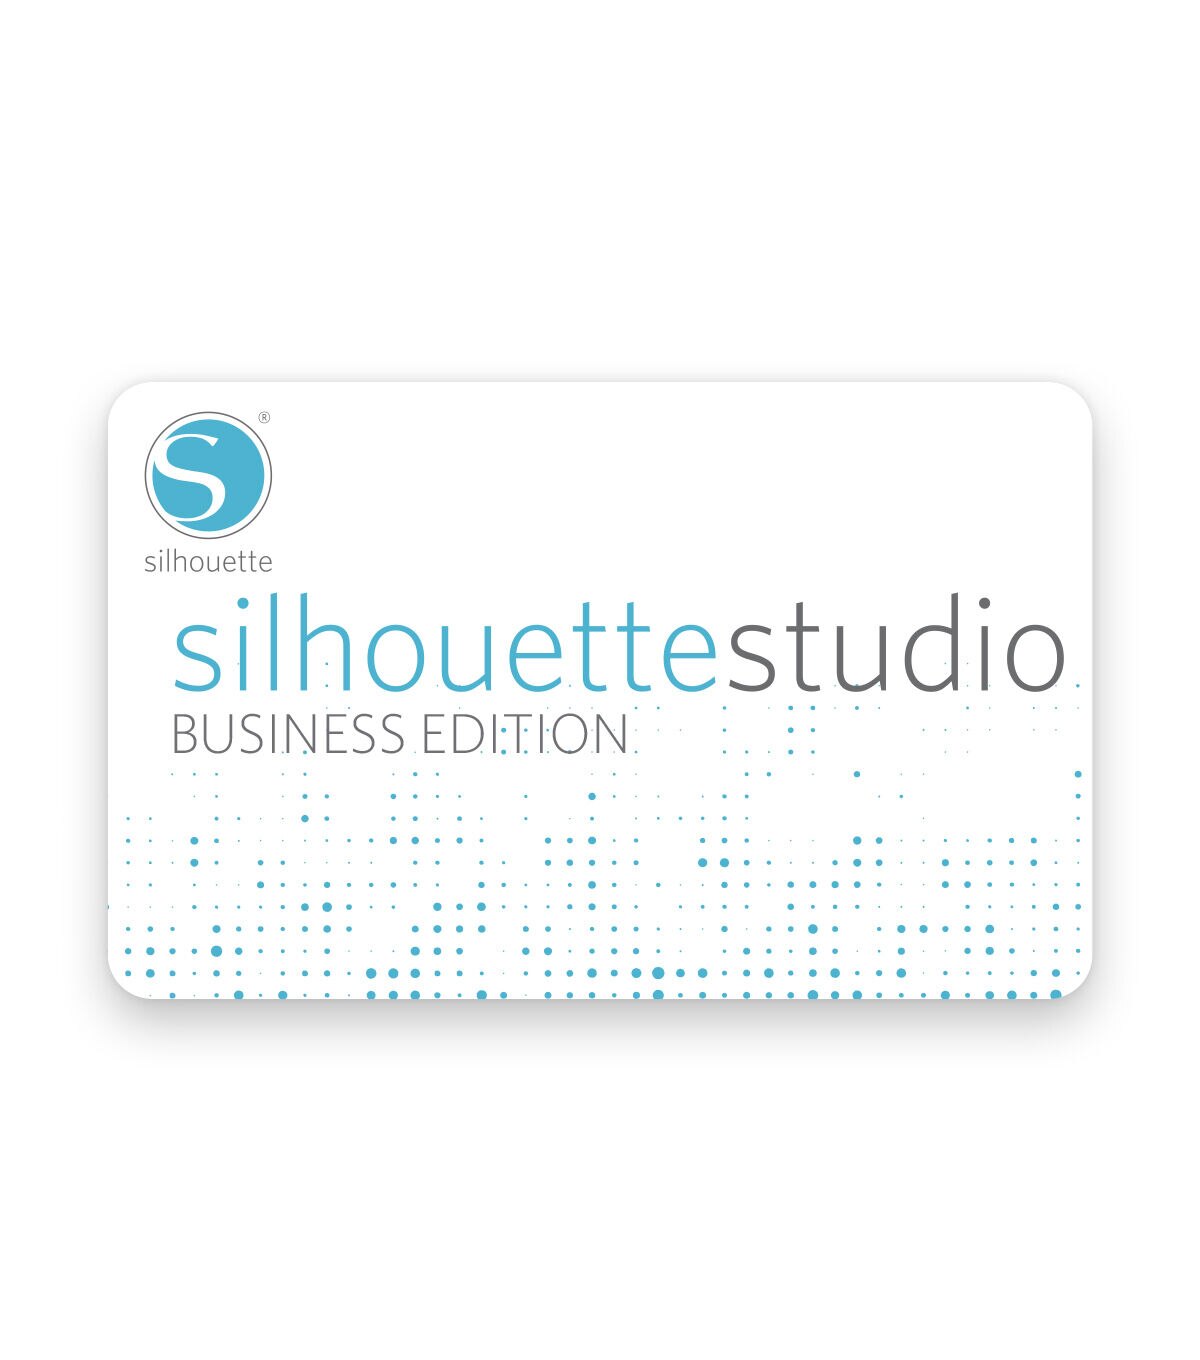 silhouette studio designer edition vs business edition